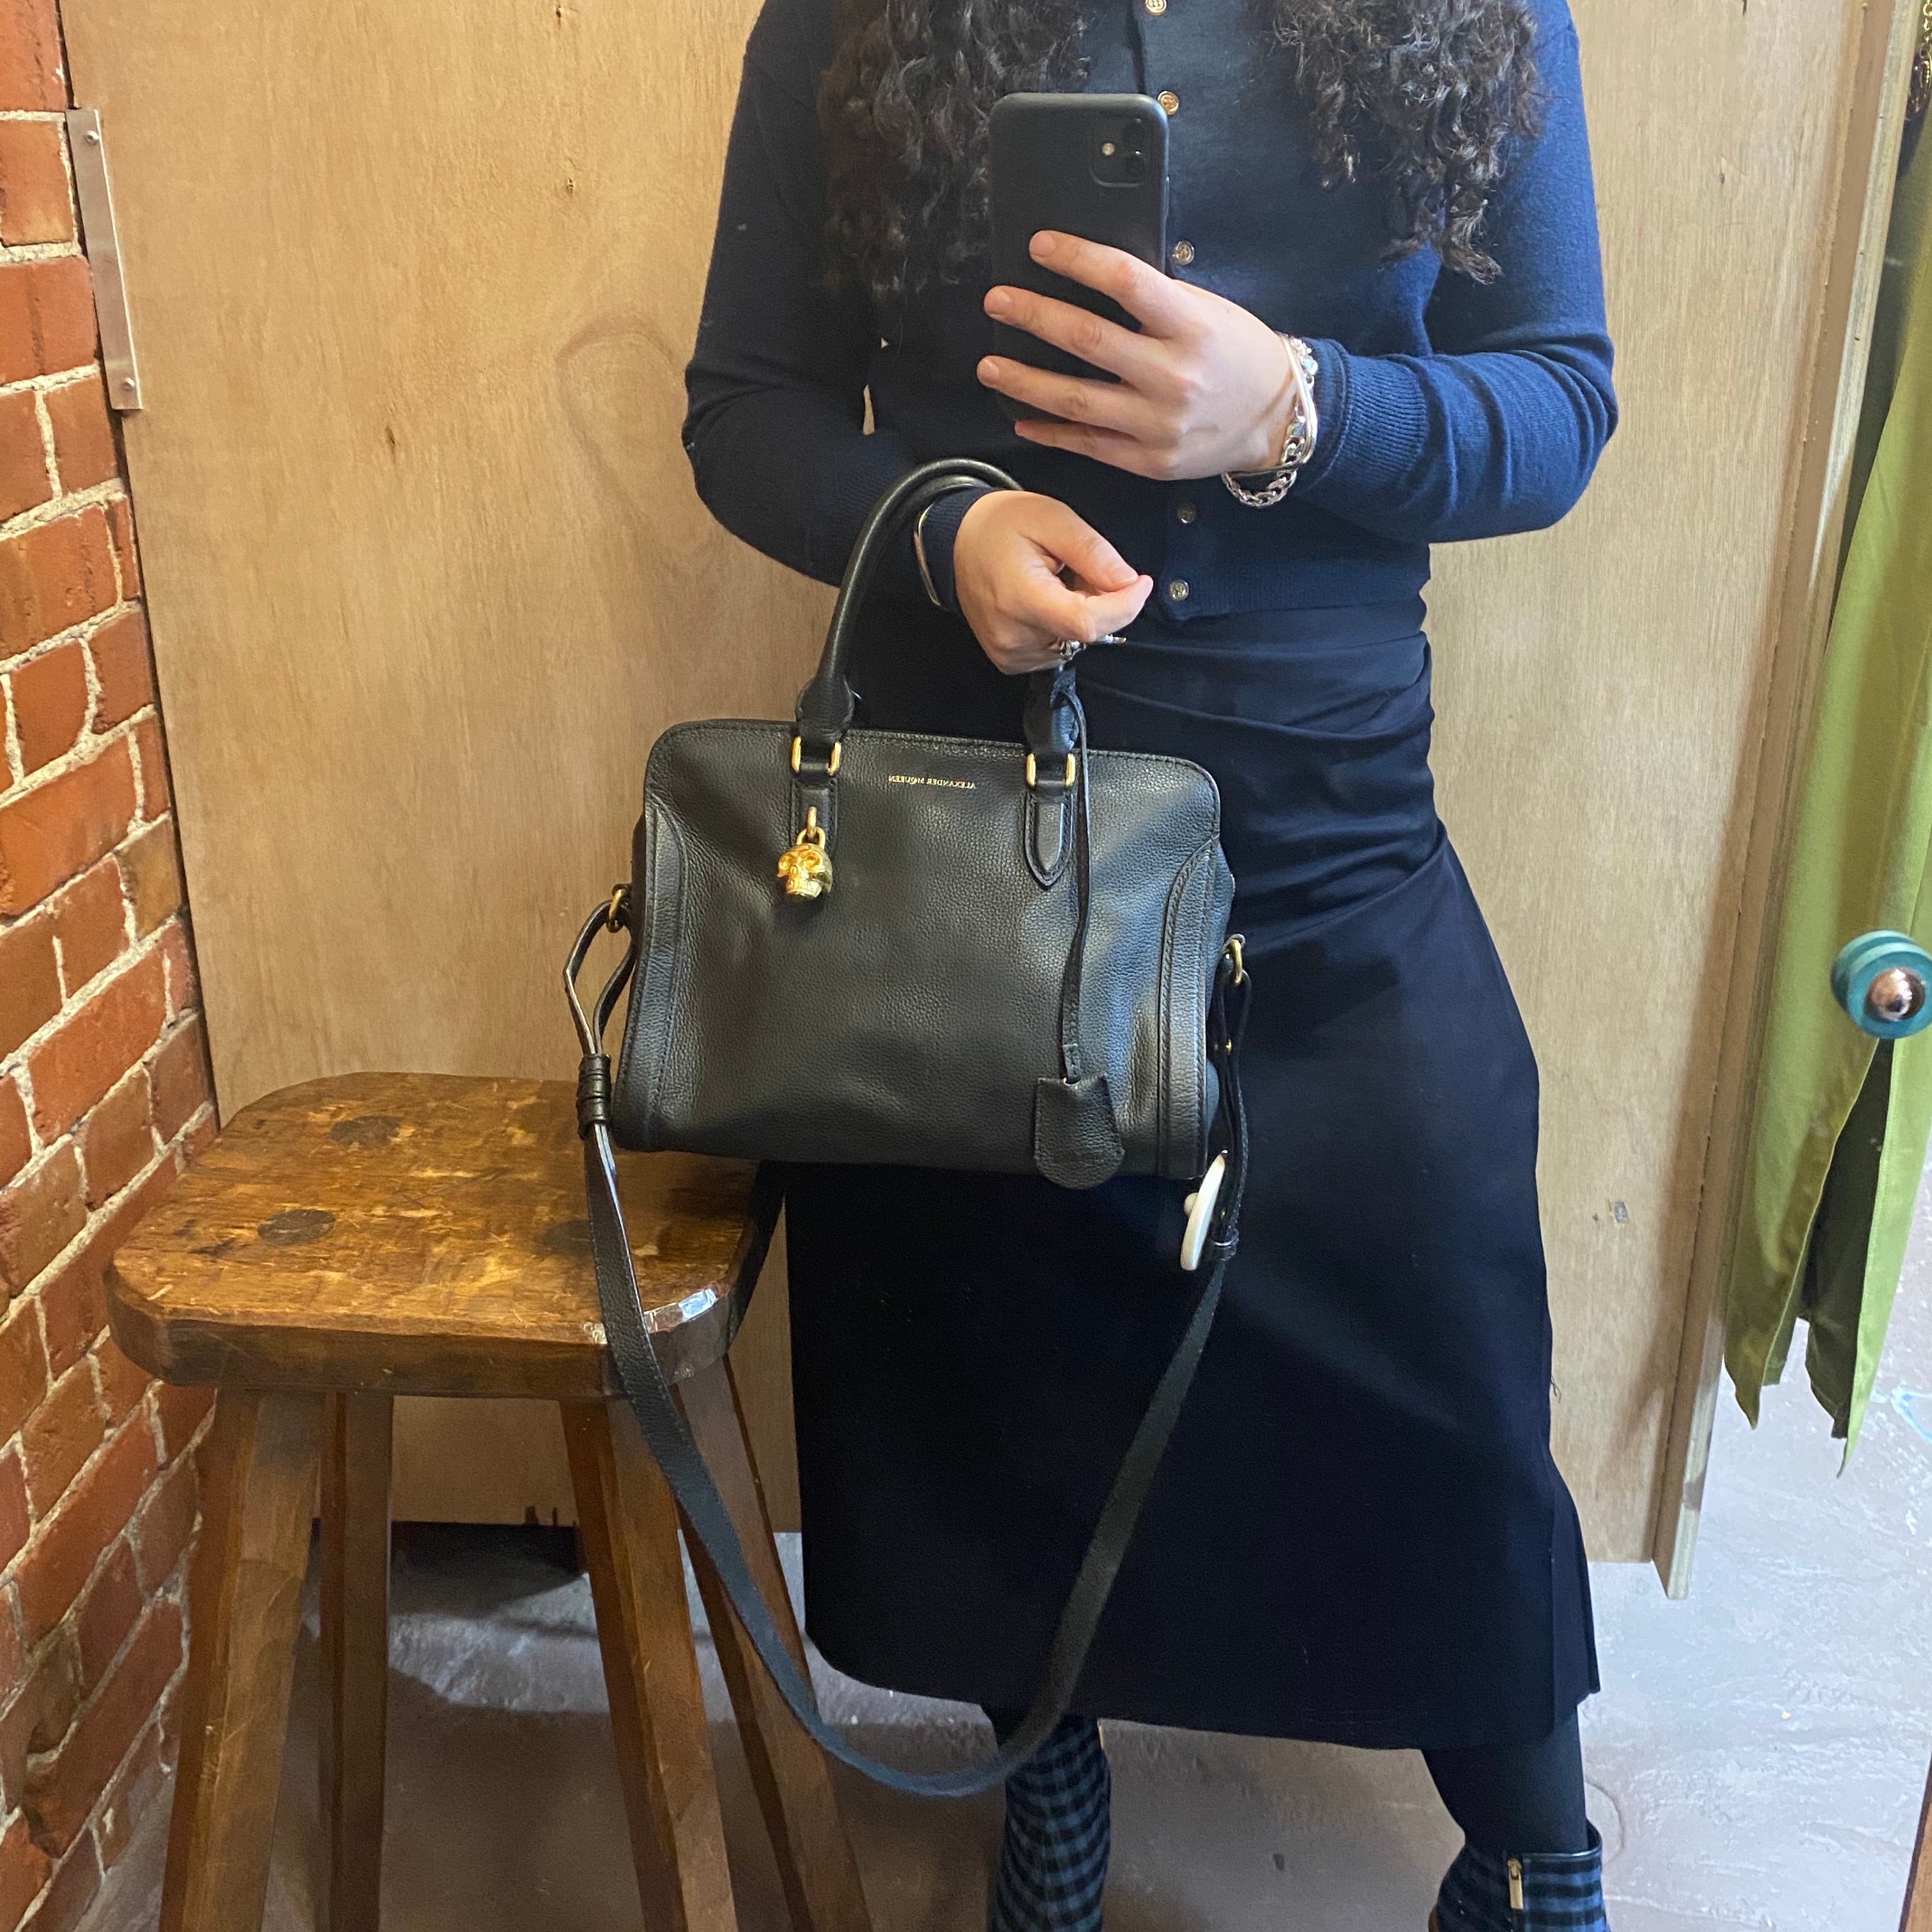 ALEXANDER MCQUEEN leather handbag